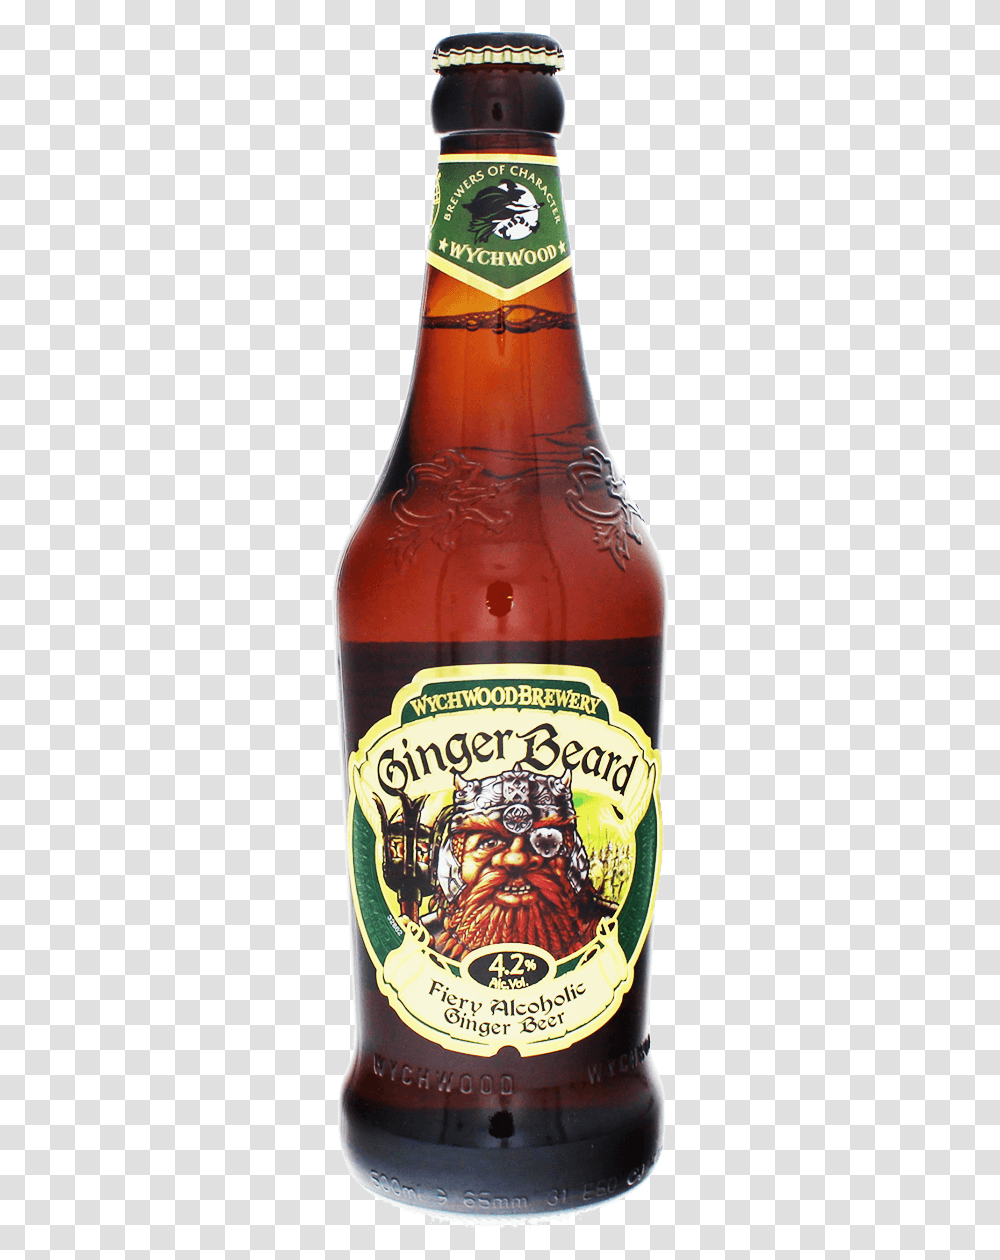 Wychwood Ginger Beard Ginger Beard Wychwood Brewery Company Ltd, Beer, Alcohol, Beverage, Drink Transparent Png